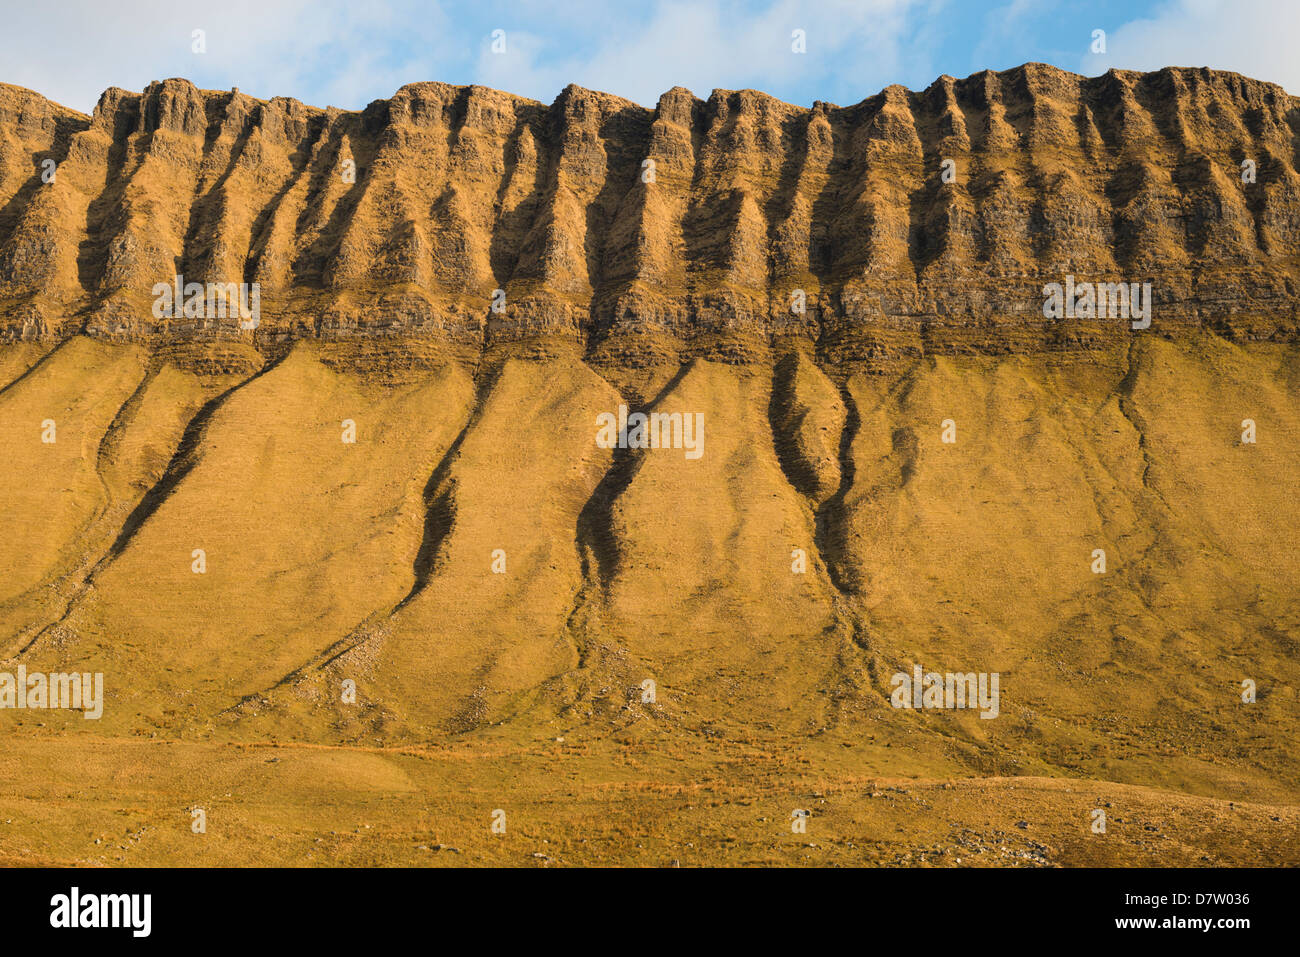 Teil der Nordwand des Benbulben, County Sligo, Irland, einer der kultigsten Naturgegebenheiten Irlands Stockfoto